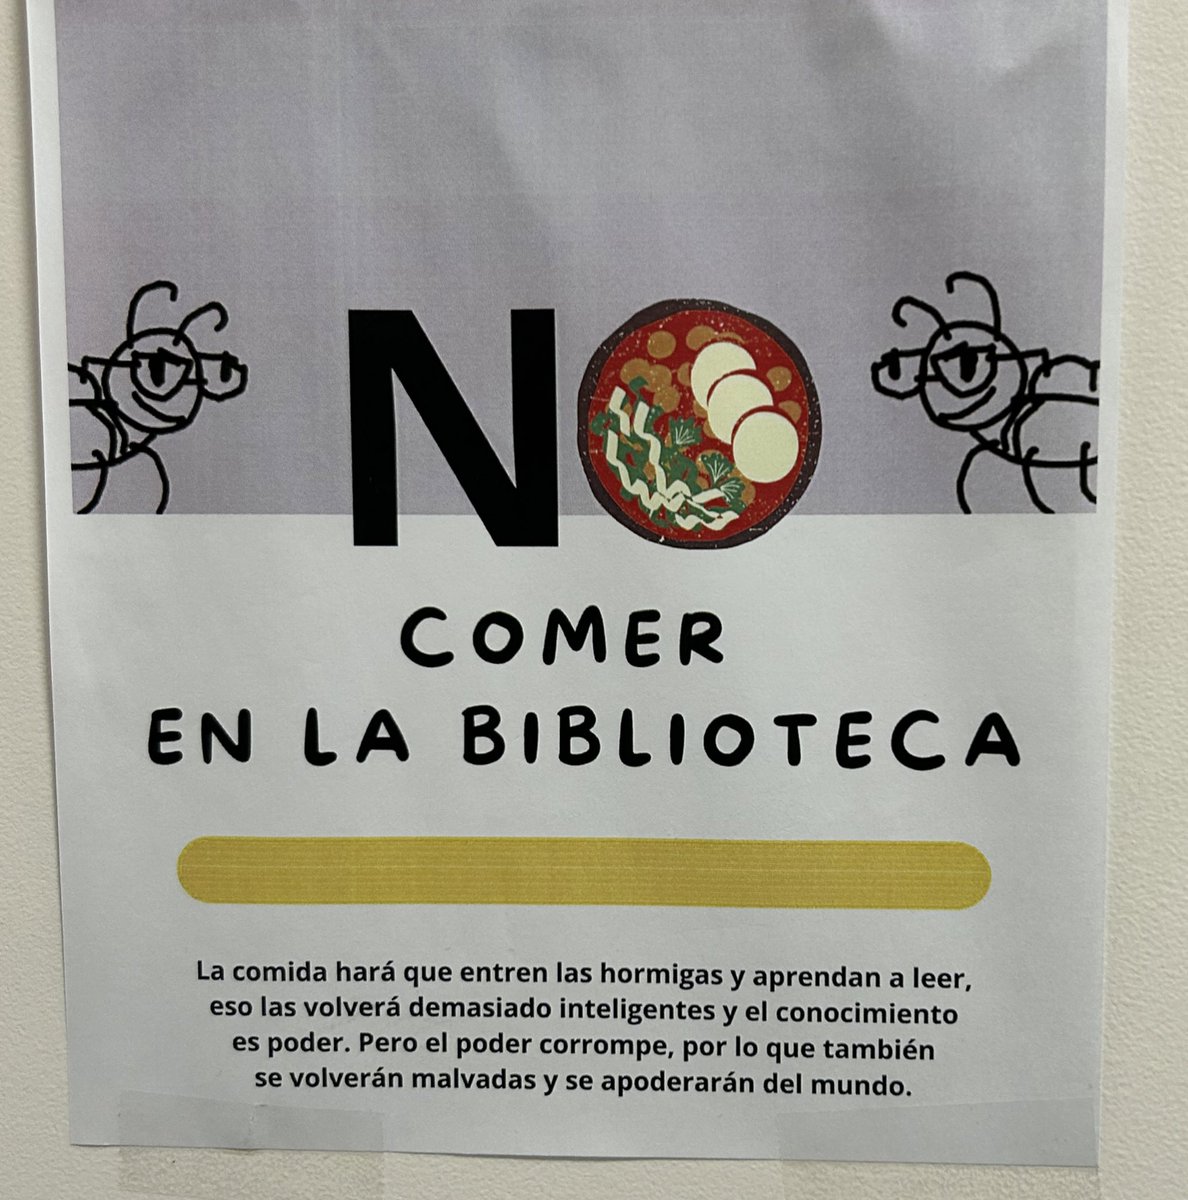 @SrLuchoPortuano Jajajaja en mi escuela hay algo parecido a esto, solo que en vez de oreos es pozole( alguien dejo literalmente una cazuela de pozole en la biblioteca) hasta letreros hay xd